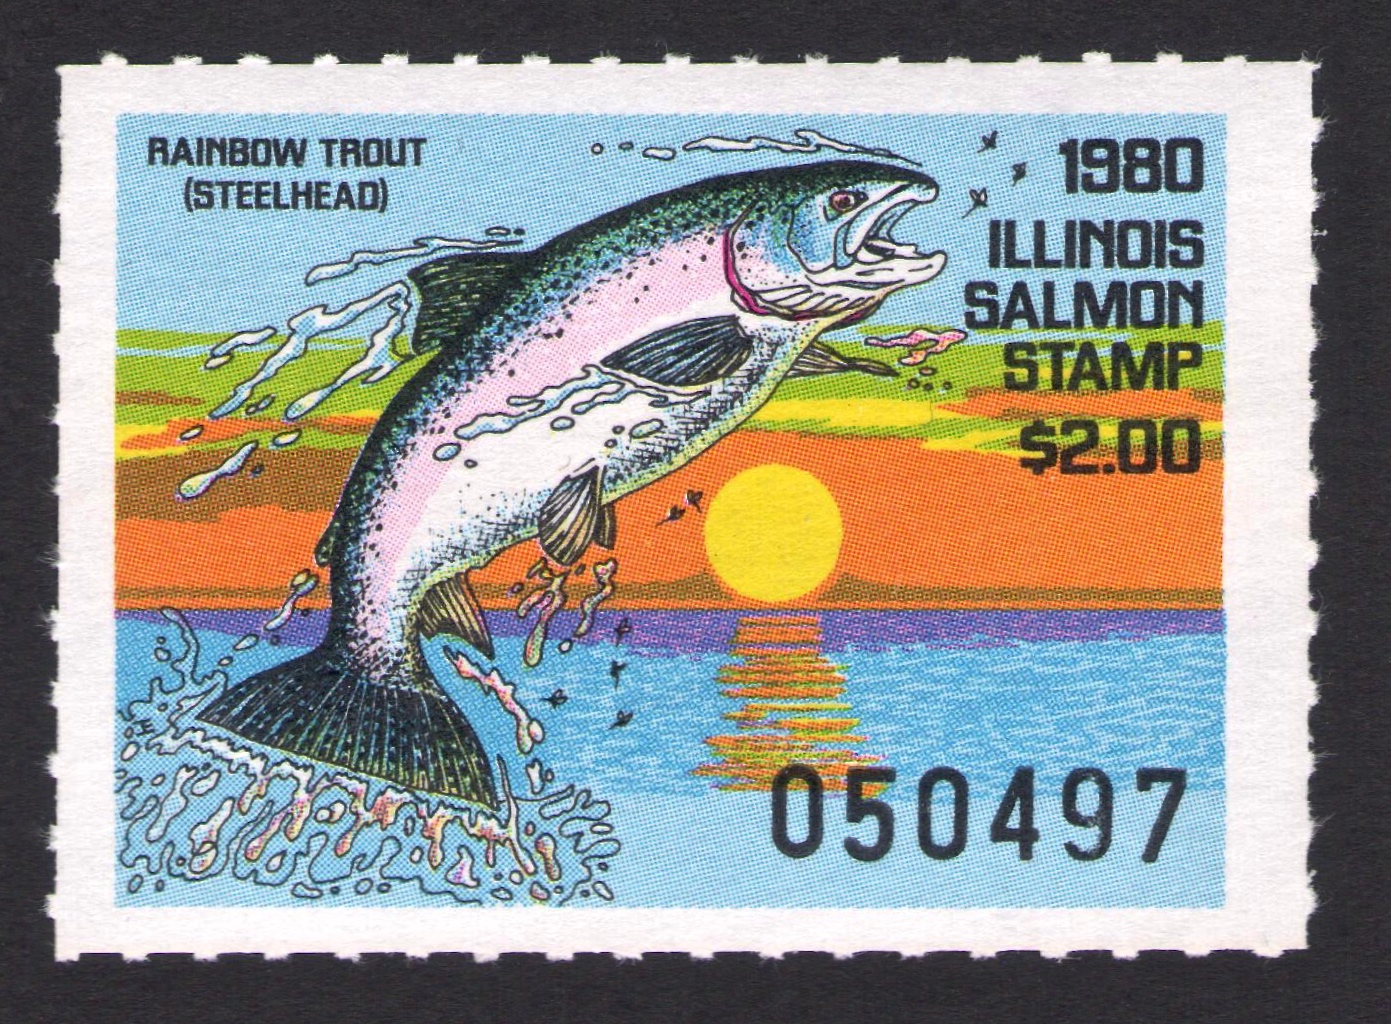 1980 Illinois Salmon